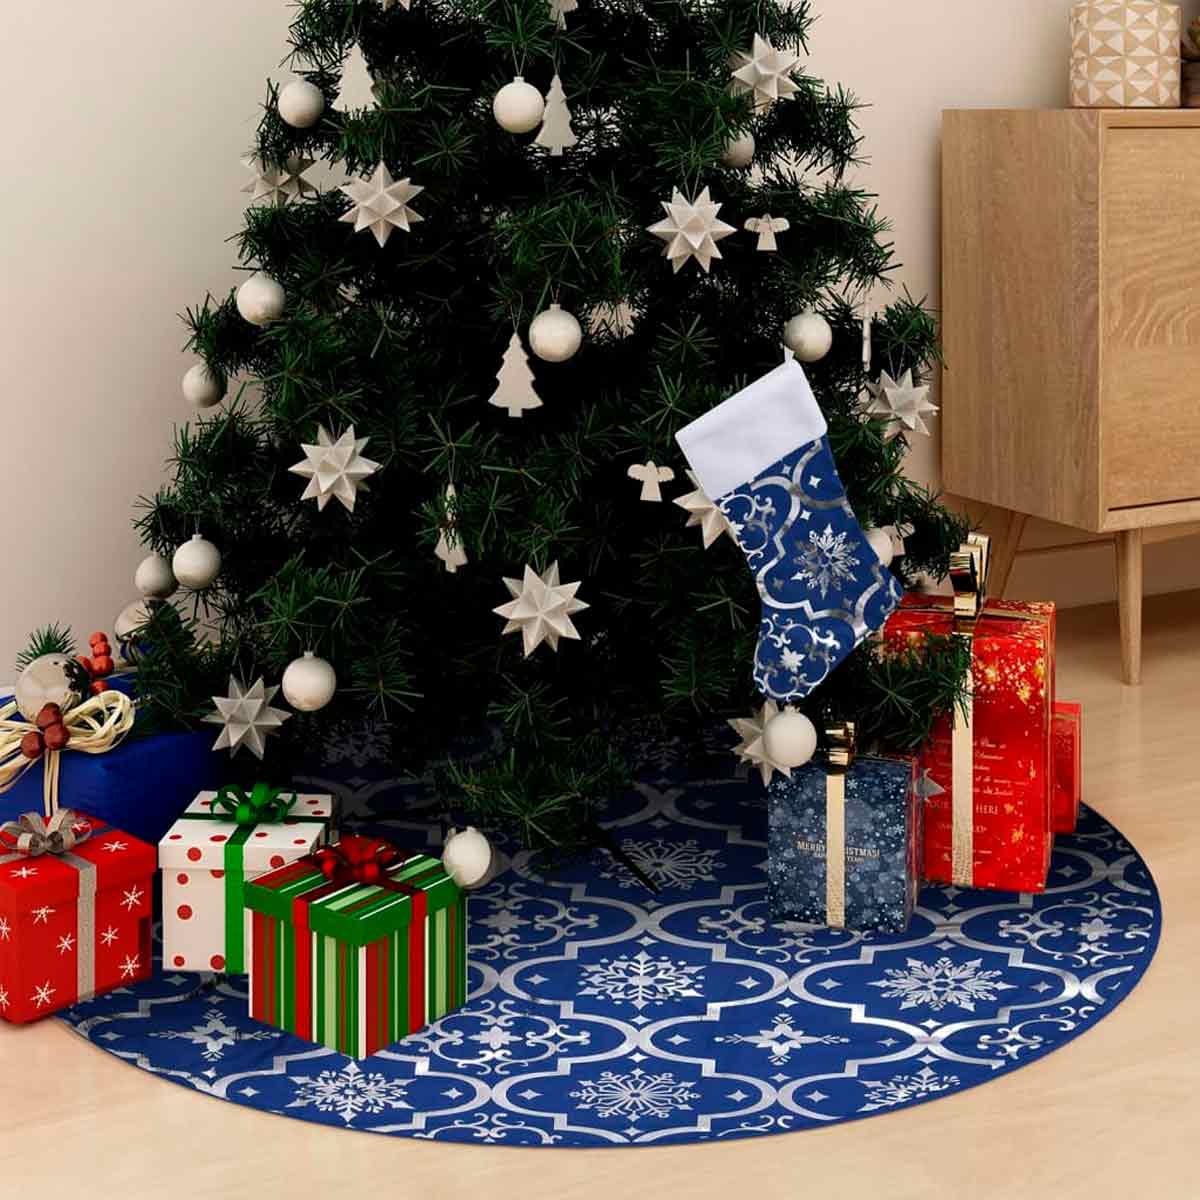 Cómo decorar el árbol de Navidad - Blog de Muebles baratos